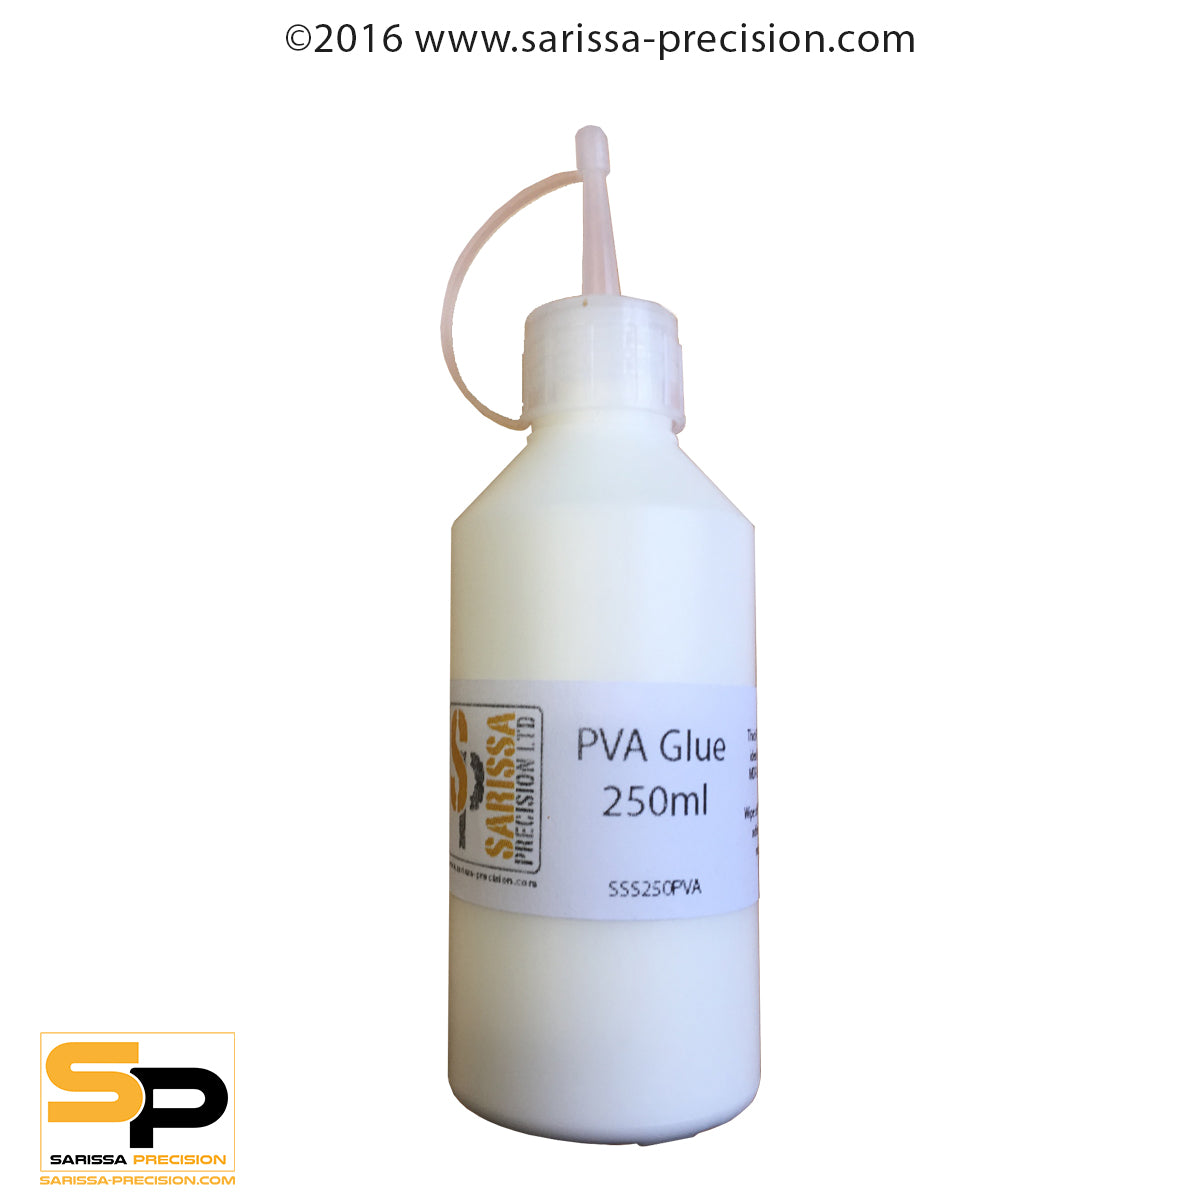 PVA Glue - 250ml